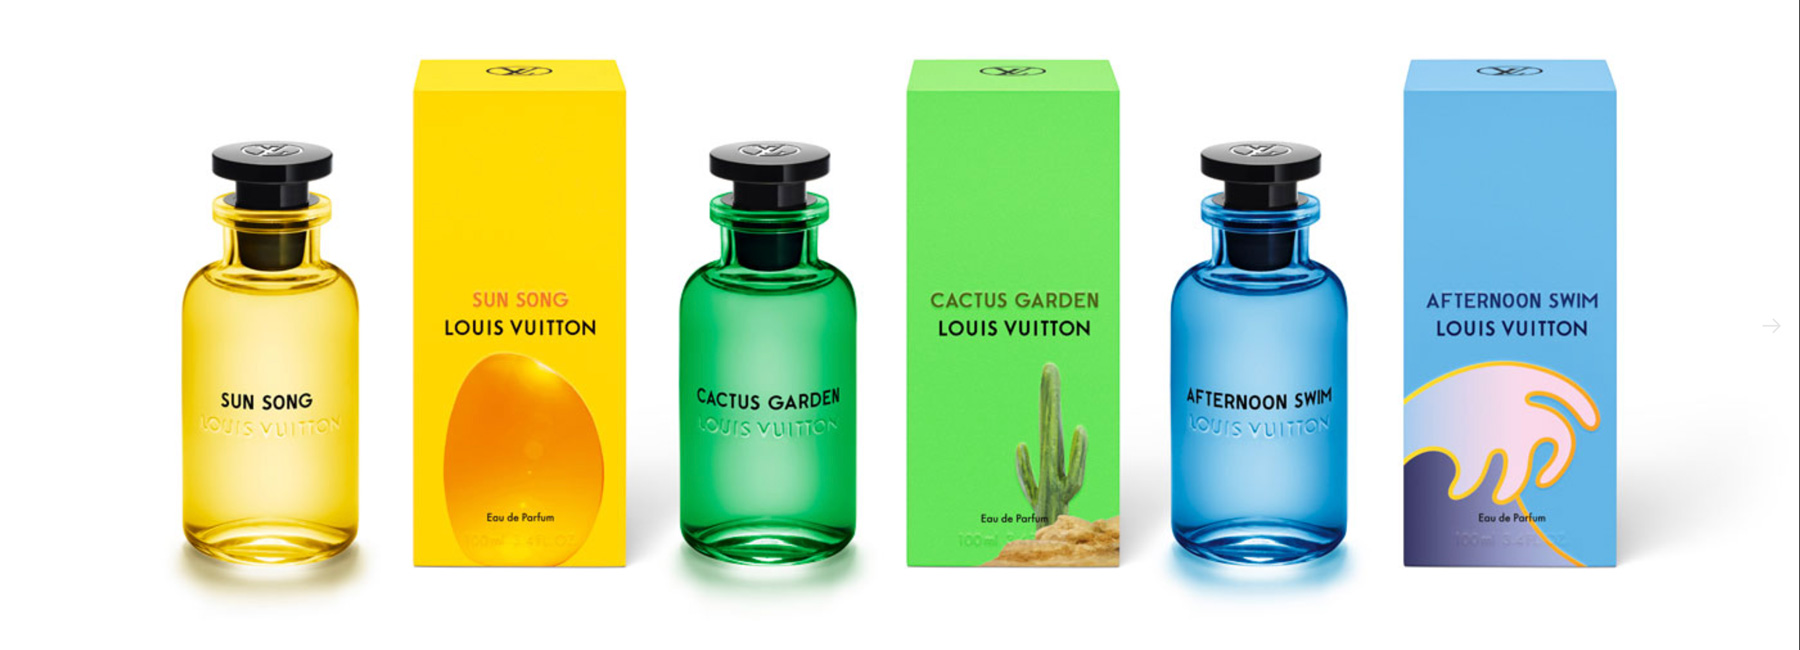 alex israel designs louis vuitton carry cases for new unisex fragrances